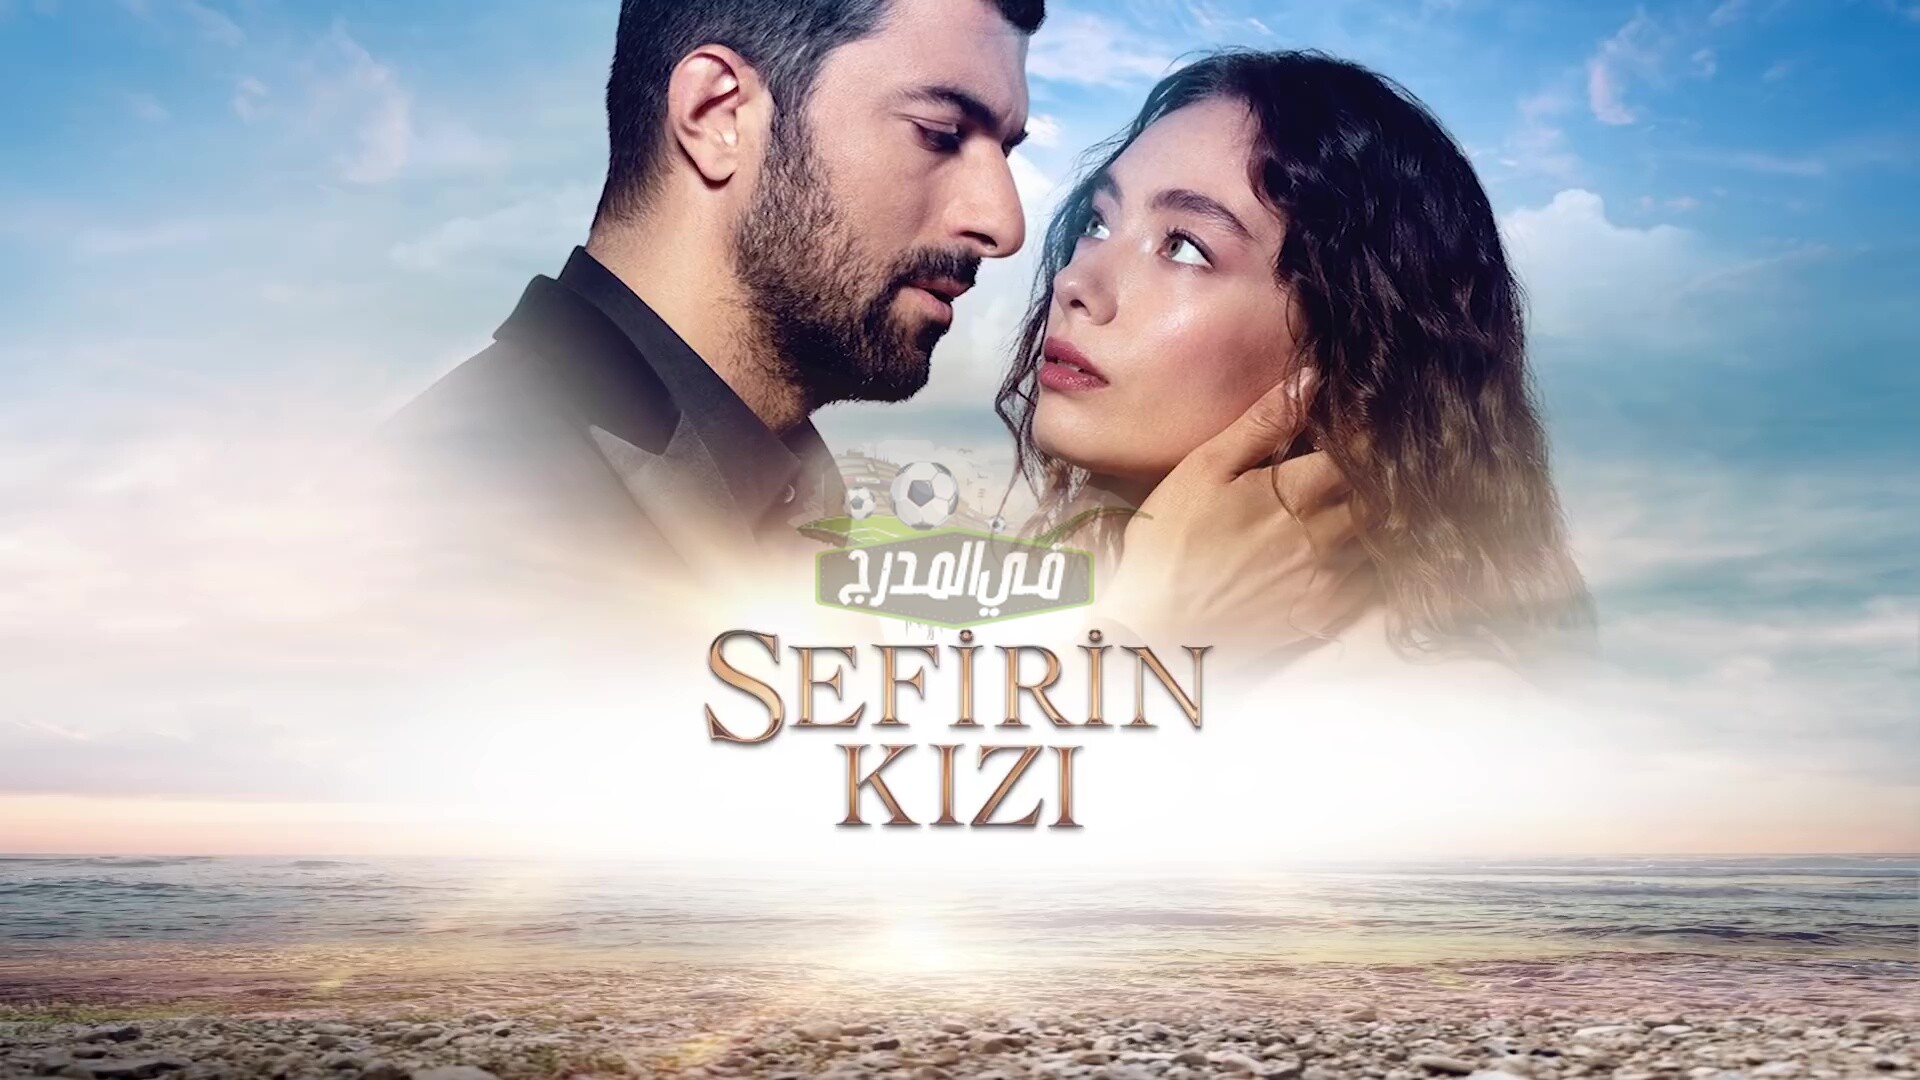 متابعة مسلسل ابنة السفير 33 sefirin kizi على قناة STAR TV التركية